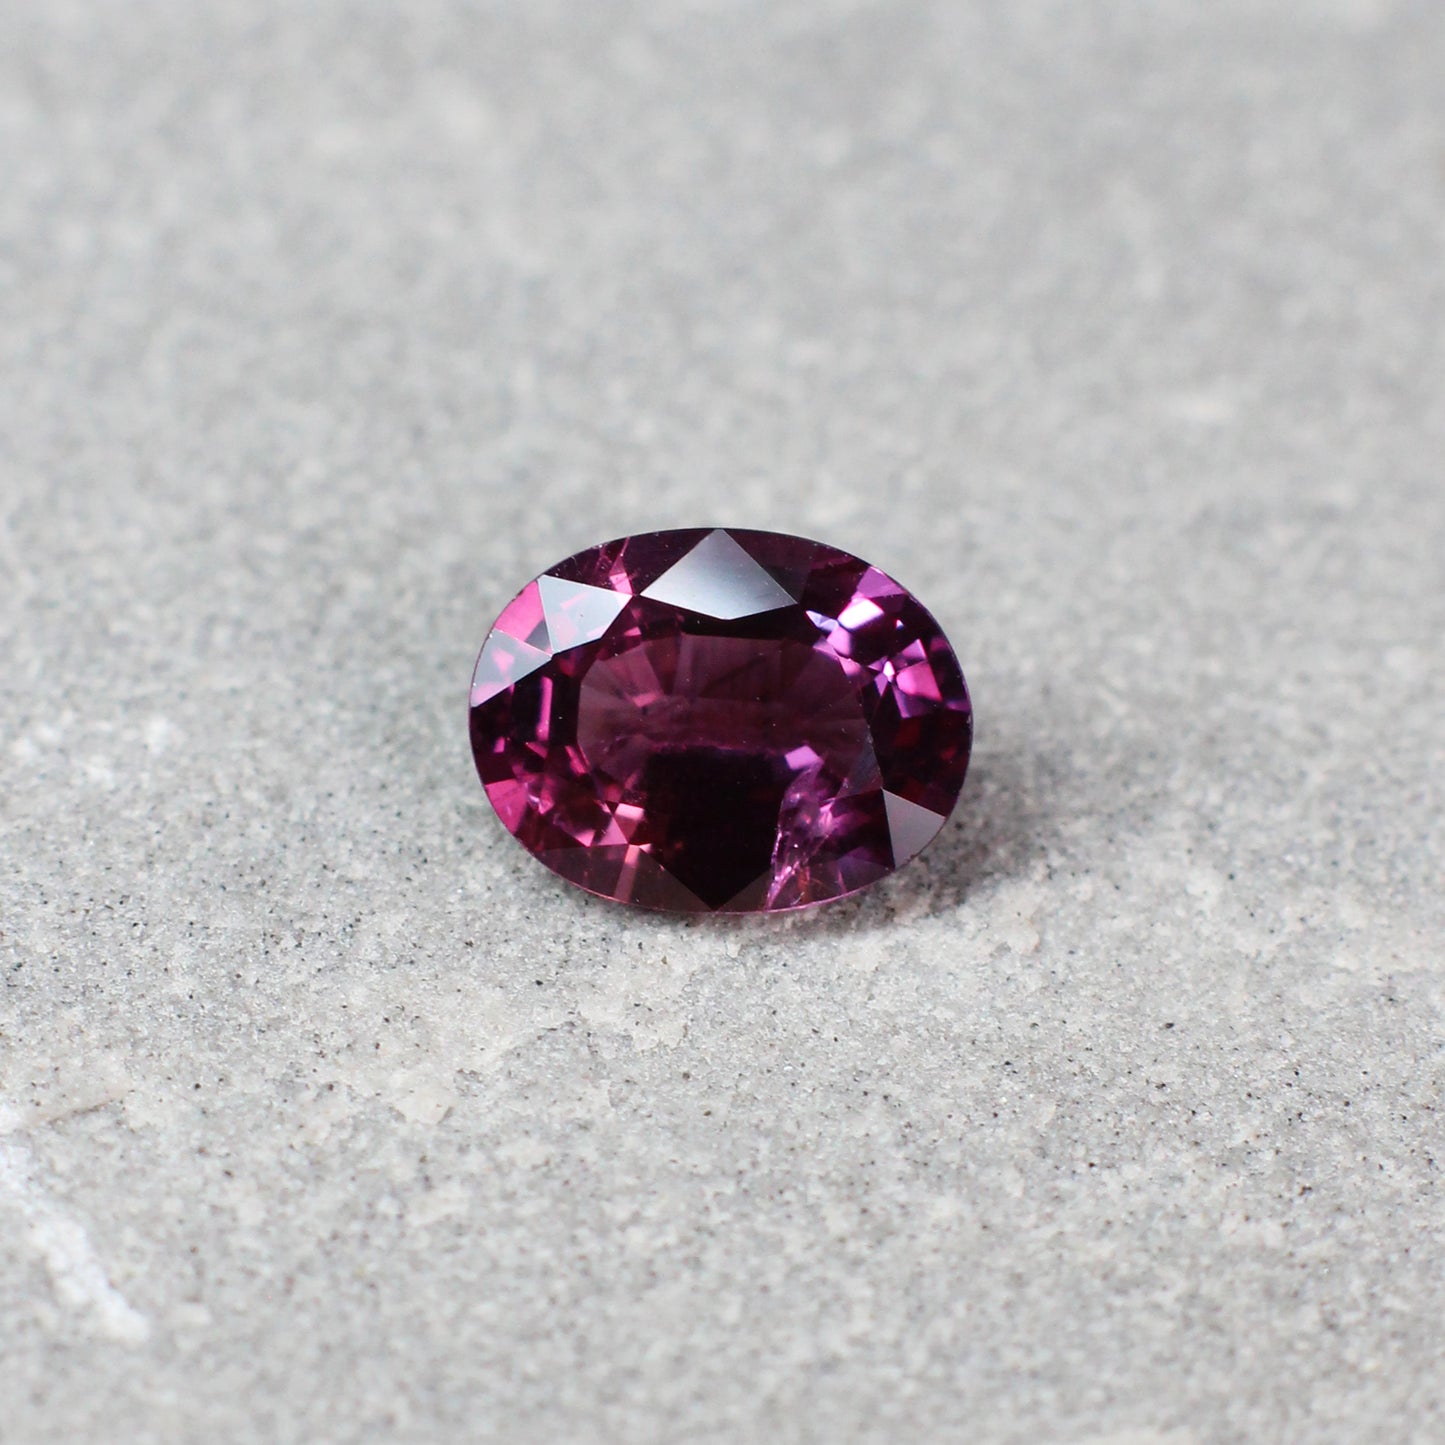 1.40ct Pink/Red, Oval Sapphire, No Heat, Sri Lanka - 7.83 x 5.98 x 3.43mm